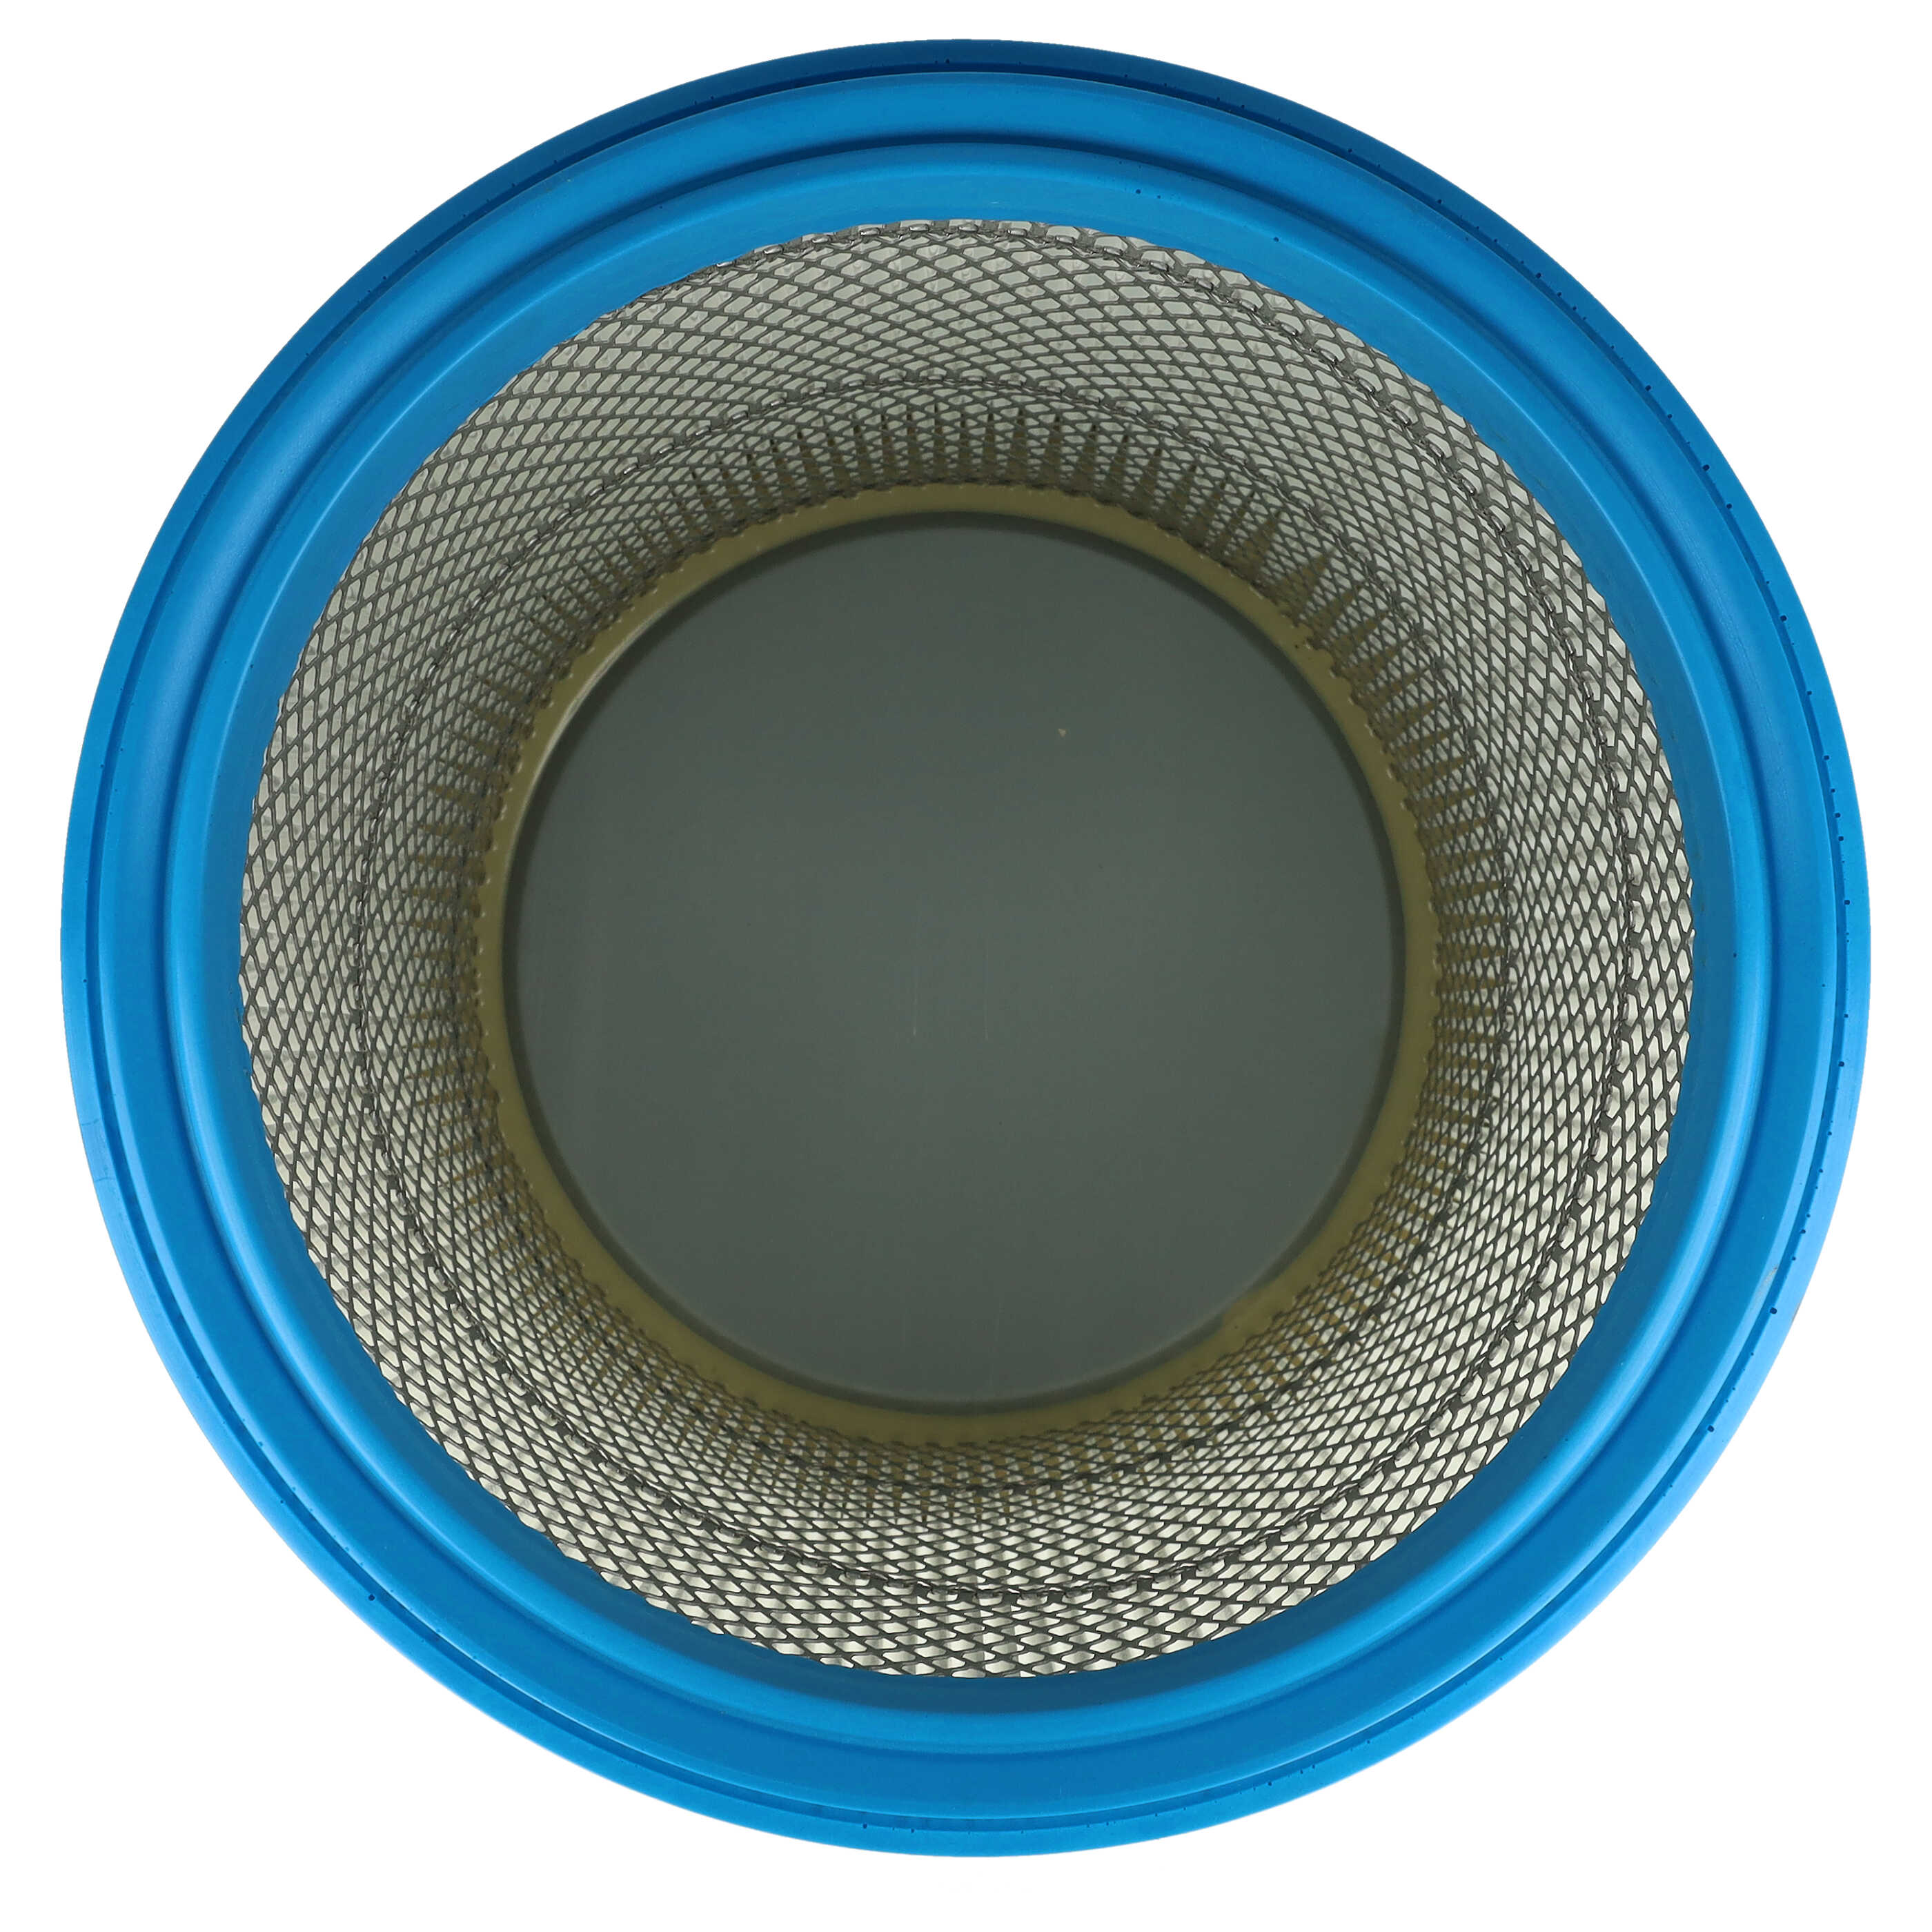 Filtro reemplaza Bosch 2607432008 para aspiradora - filtro de cartucho, blanco / plata / azul